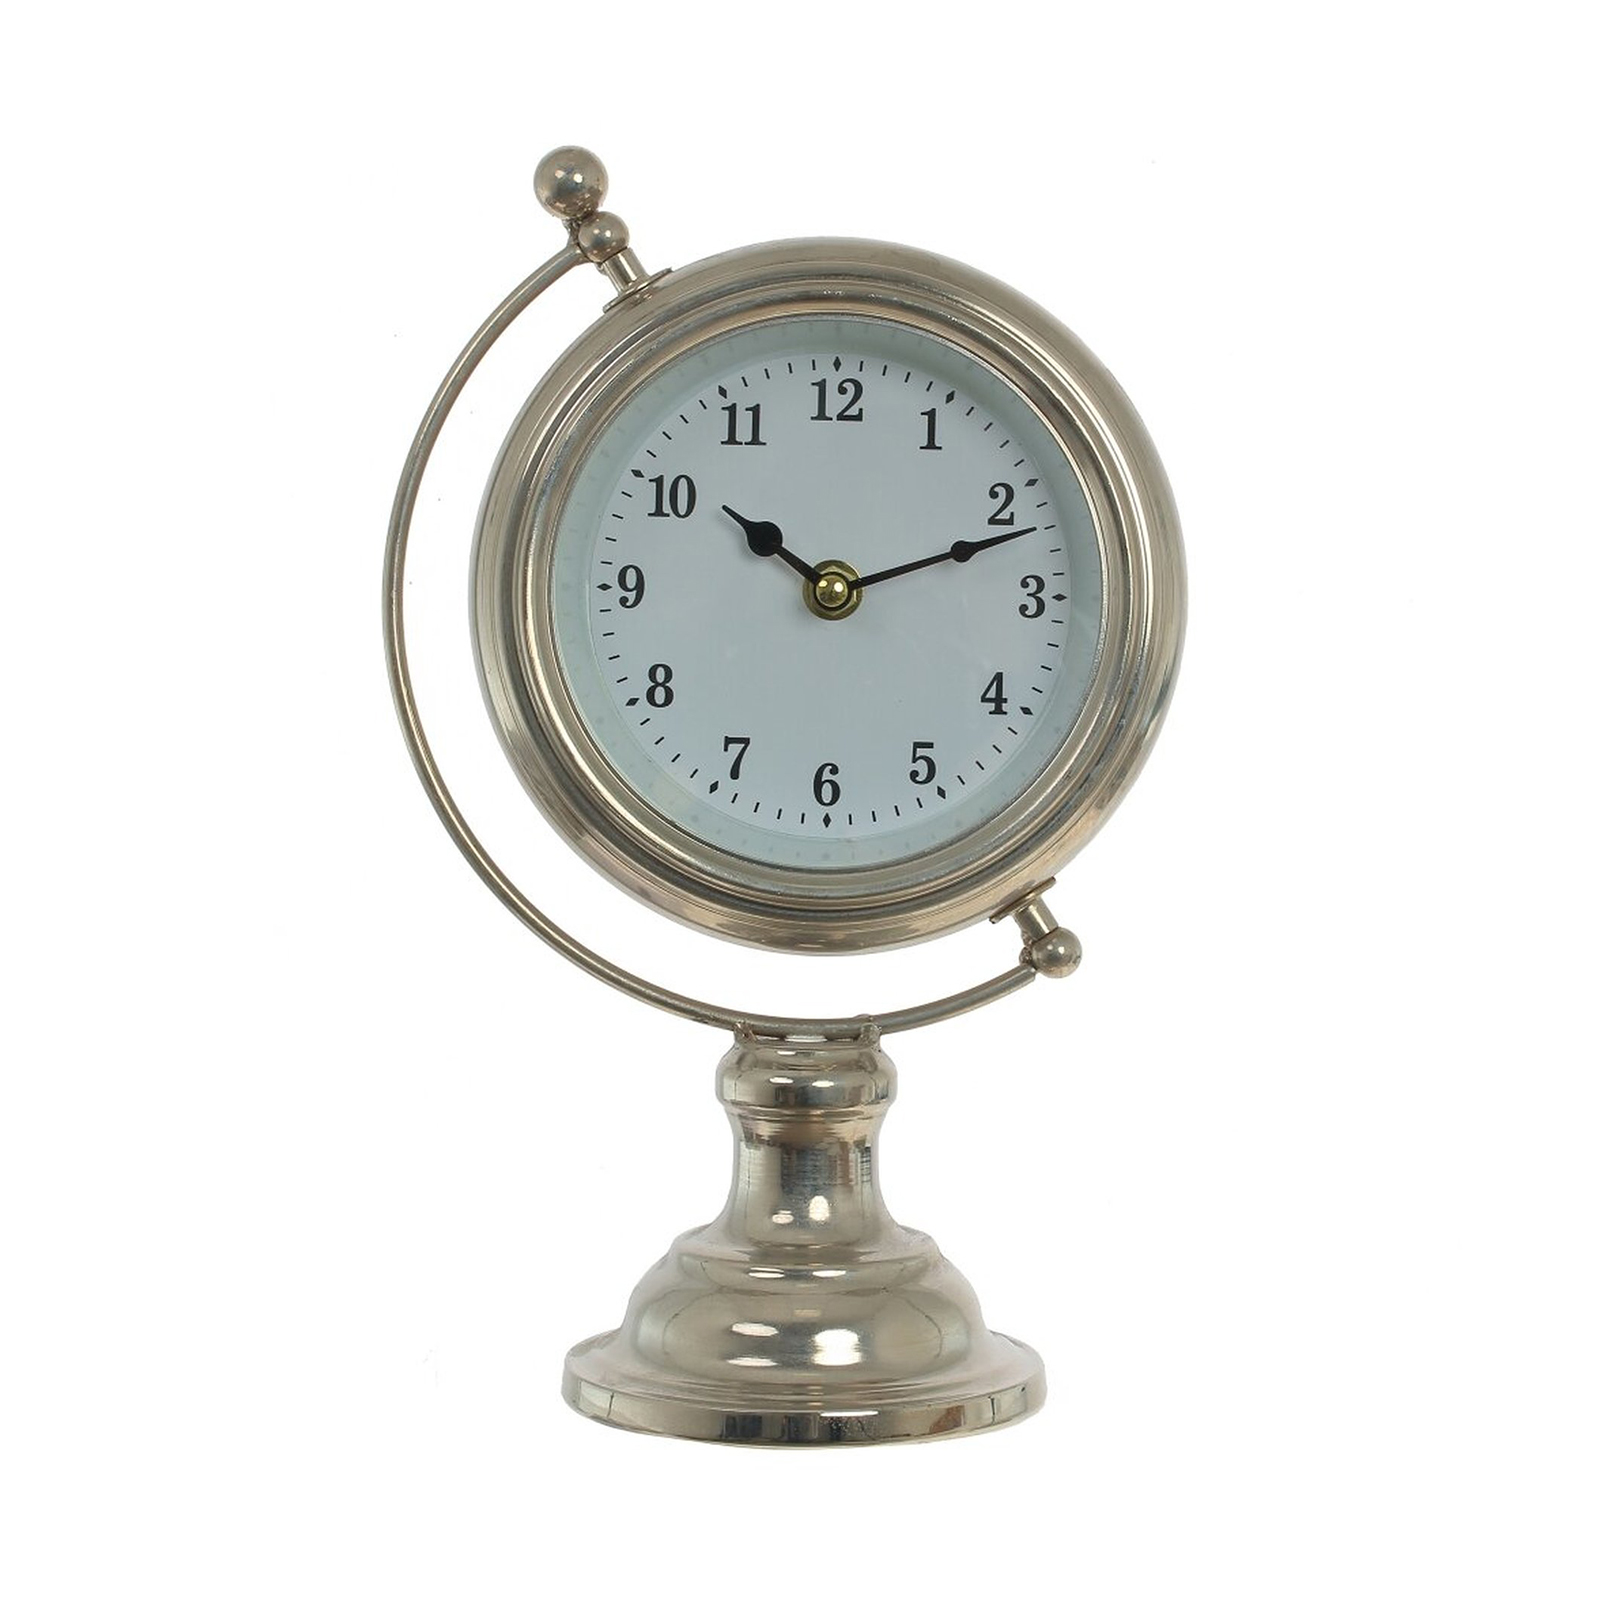 Настольные часы Kairos tb002w. WS-1003 статуэтка-часы Атлант. Часы настольные декоративные. Часы настольные Сургутнефтегаз. Часы 24 вольта